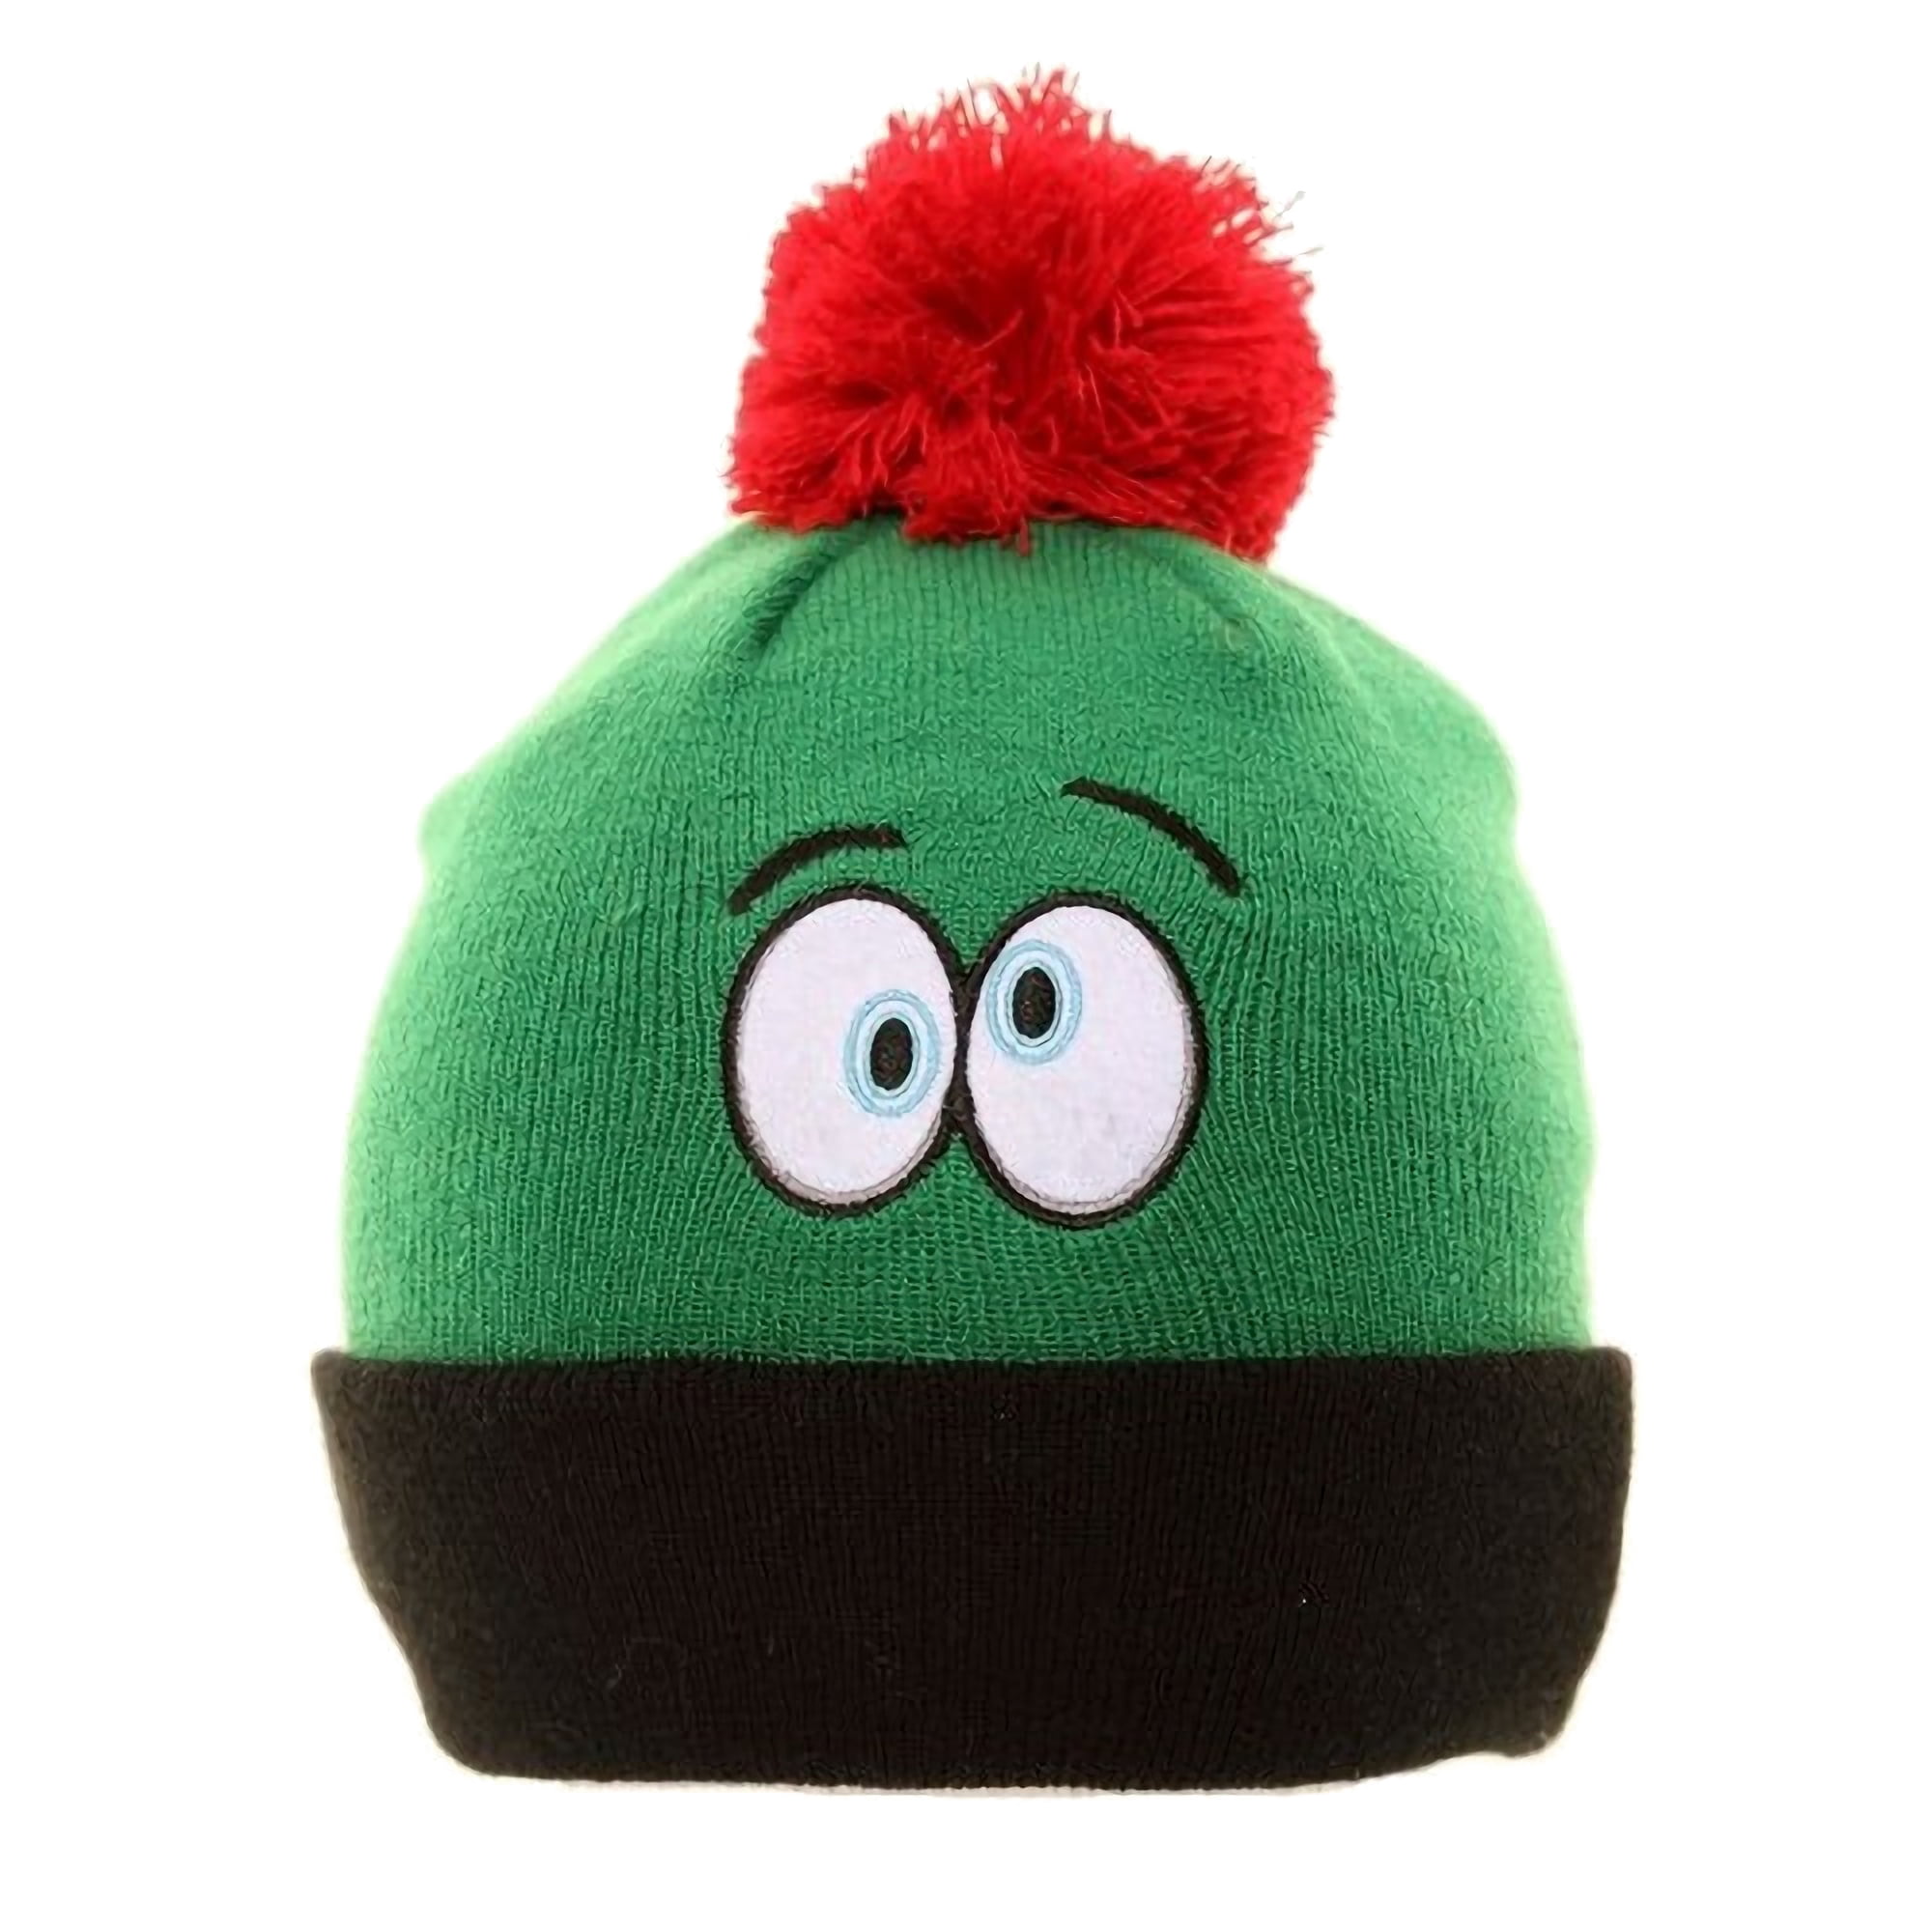 Childrens/Kids Novelty Eyes Winter Ski Hat With Pom-Pom HA490 